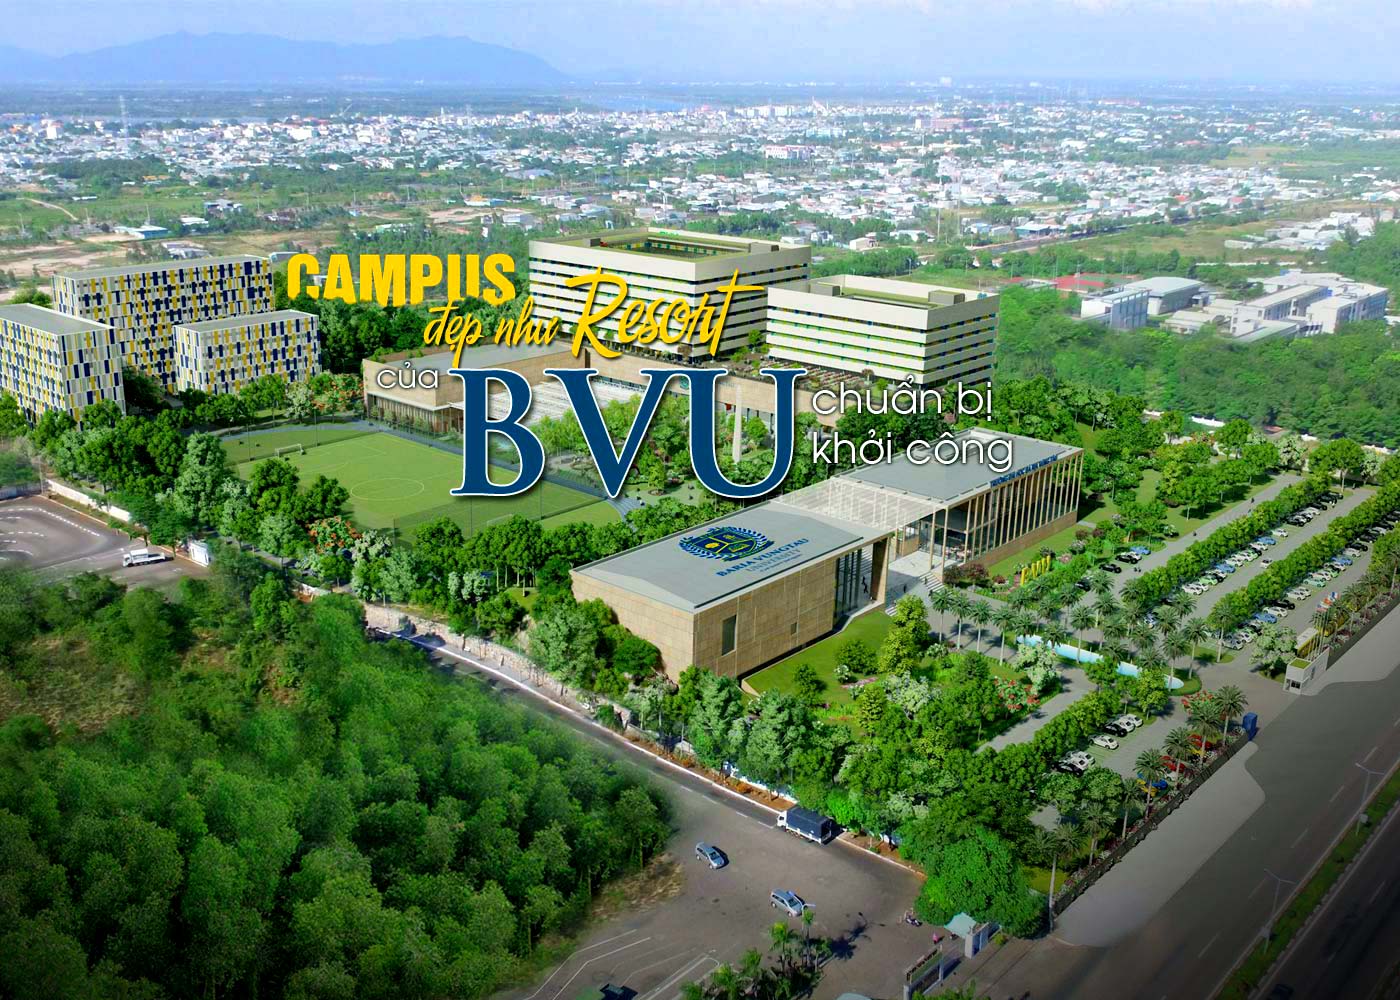 Campus đẹp như resort của BVU chuẩn bị khởi công - Ảnh 1